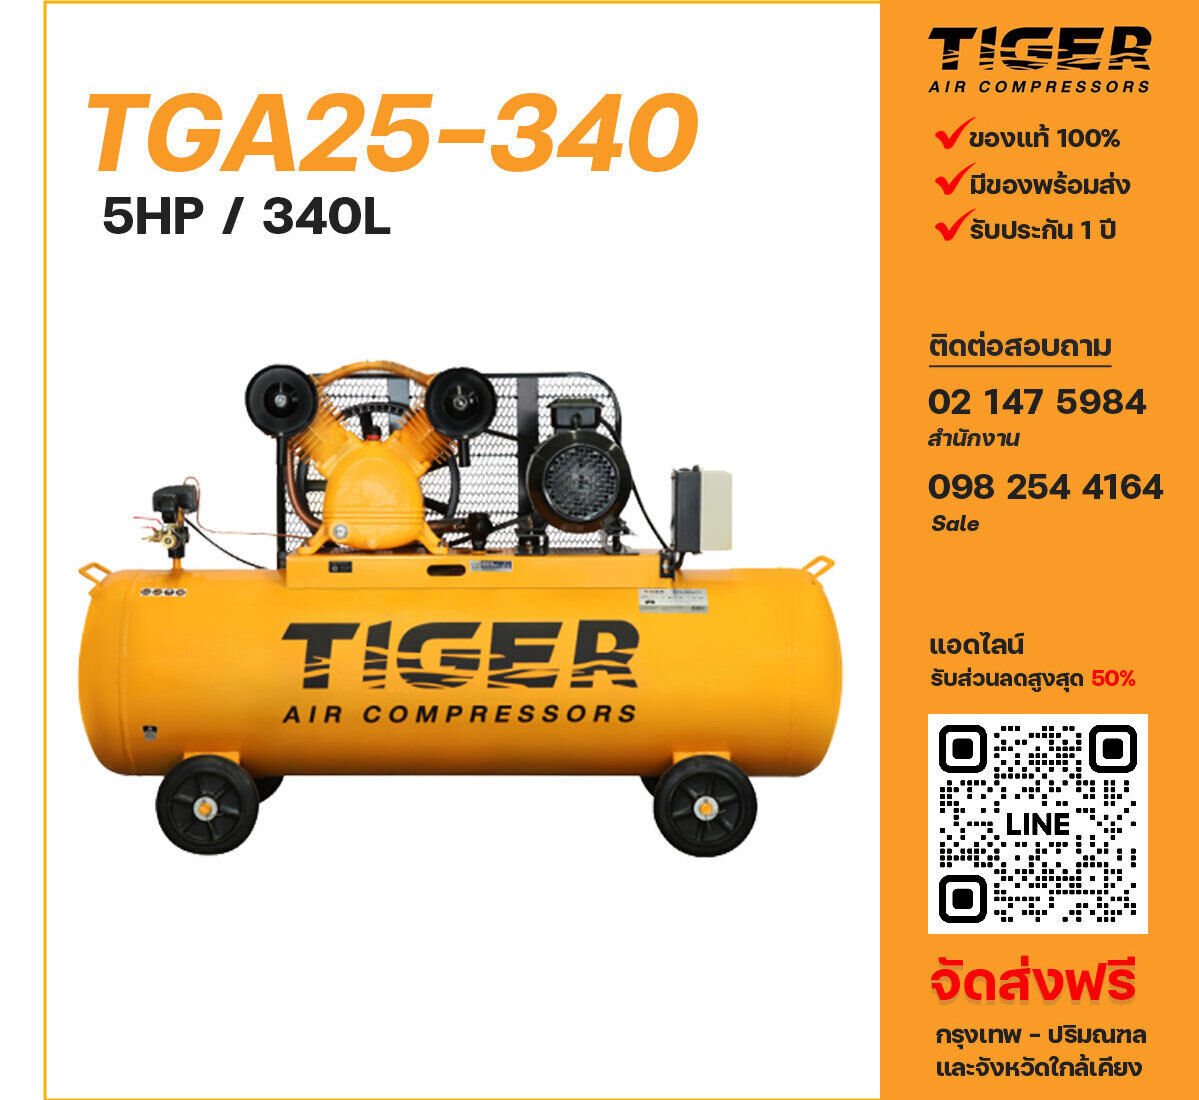 ปั๊มลมไทเกอร์ TIGER TGA25-340 380V ปั๊มลมลูกสูบ ขนาด 2 สูบ 5 แรงม้า 340 ลิตร TIGER พร้อมมอเตอร์ ไฟ 380V ส่งฟรี กรุงเทพฯ-ปริมณฑล รับประกัน 1 ปี